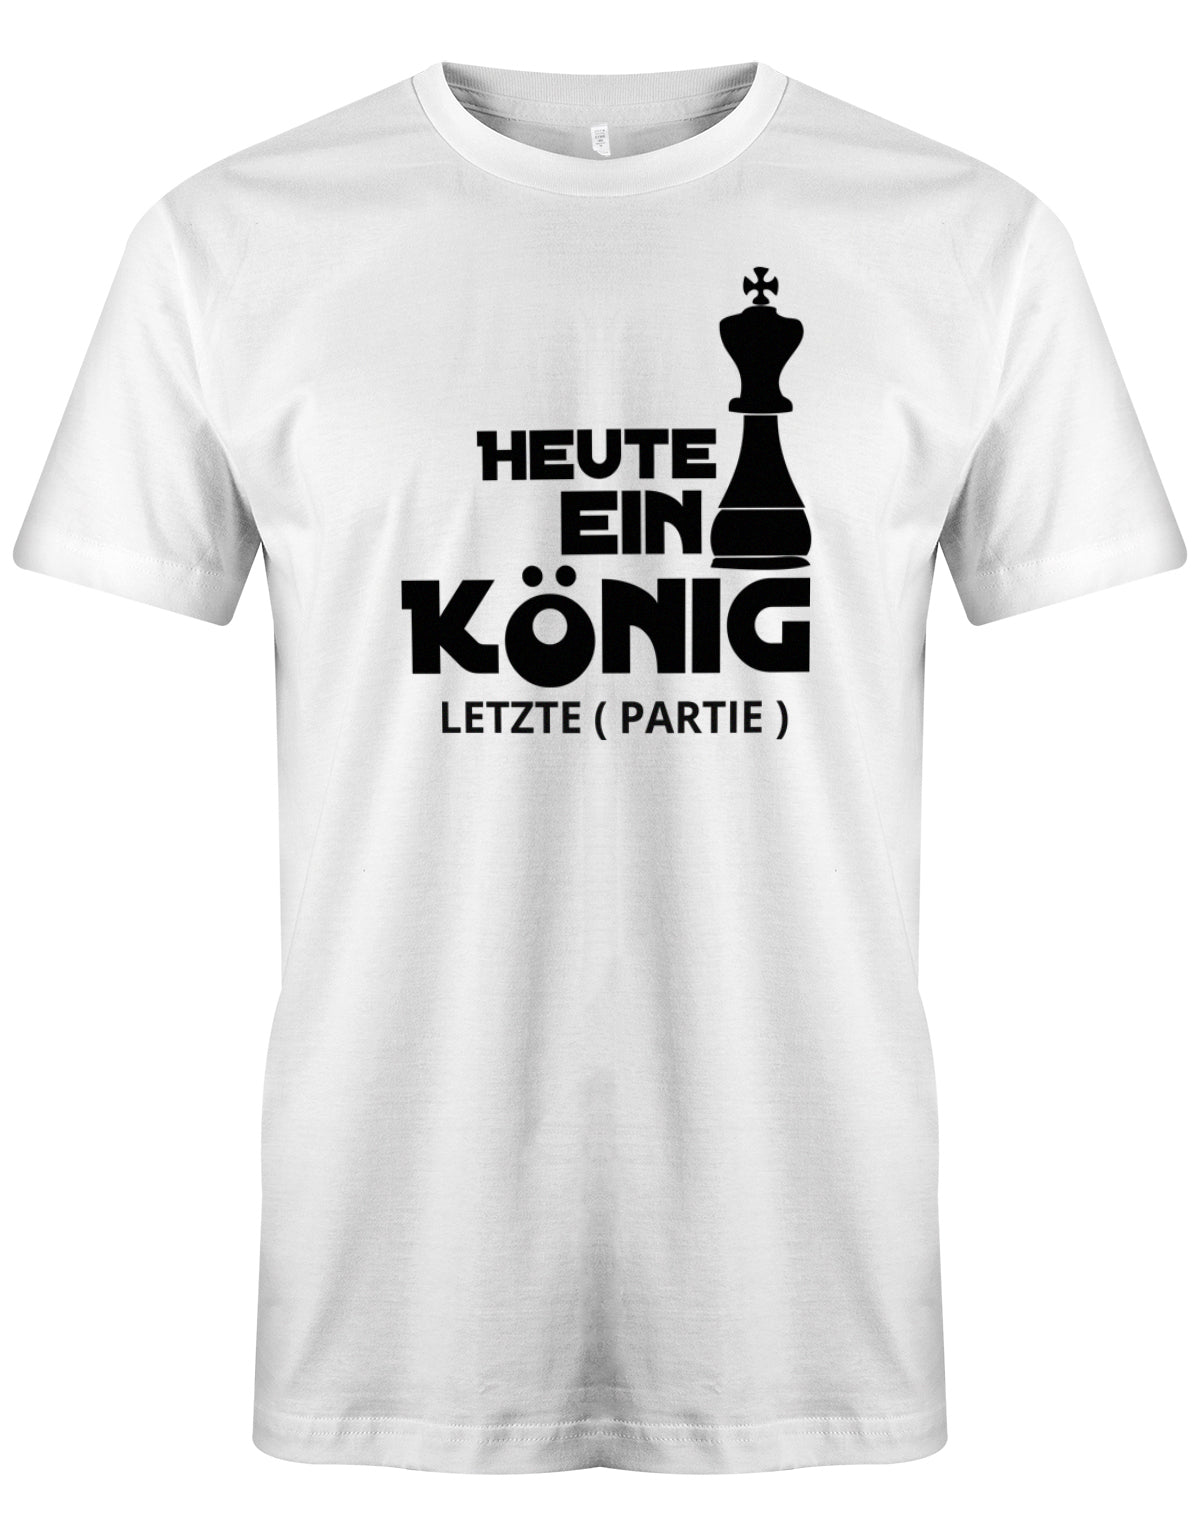 herren-shirt-weissCjDPz3NS4TRLl